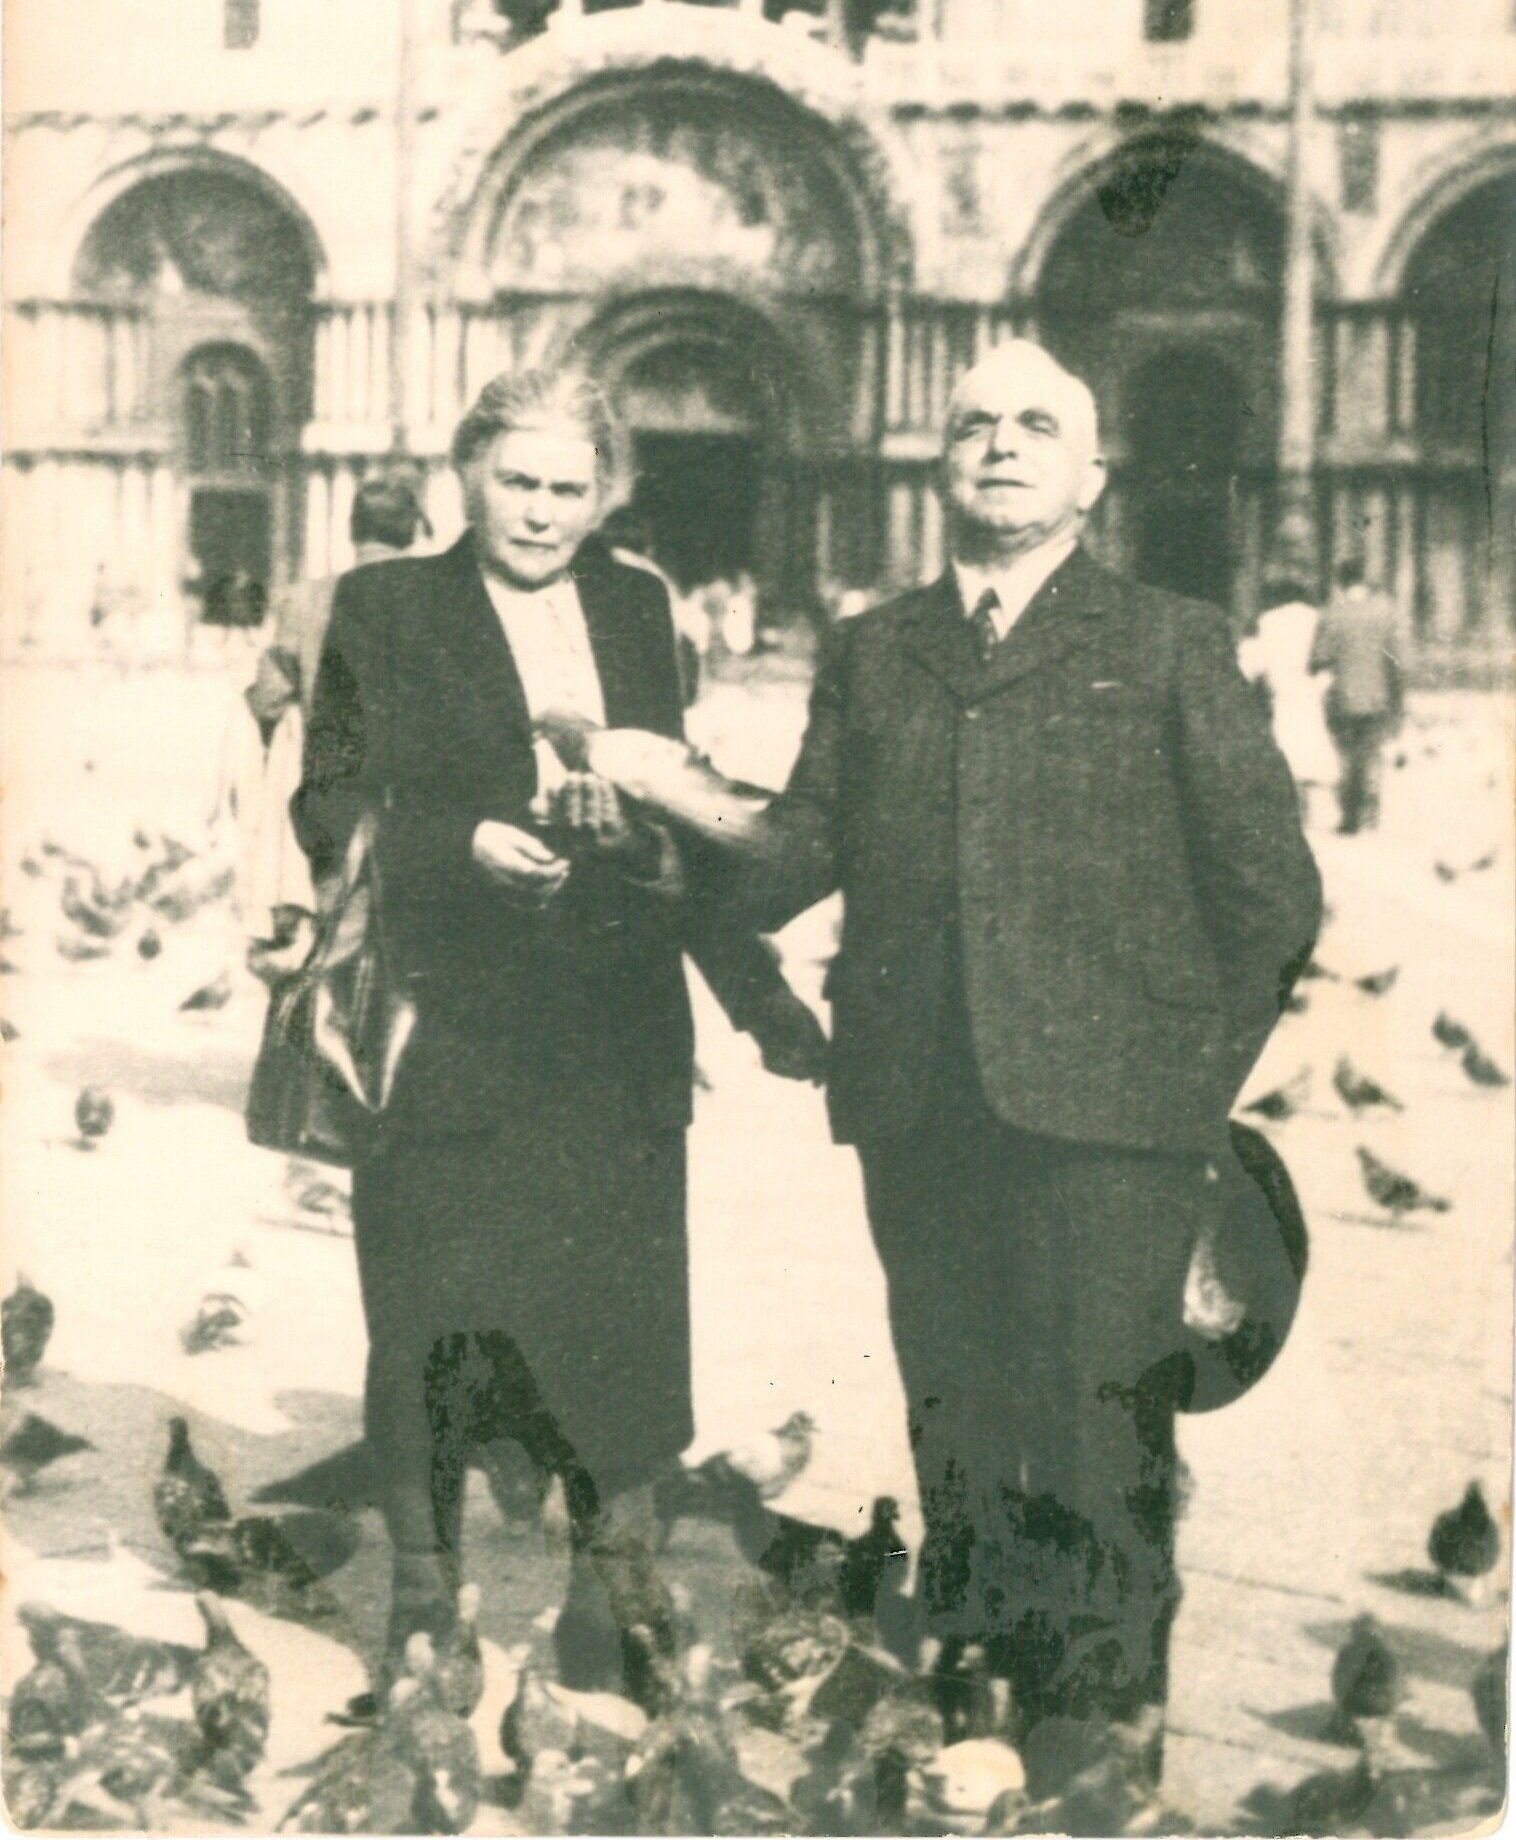 Guglielmo and Giuseppina Tenconi in Venice